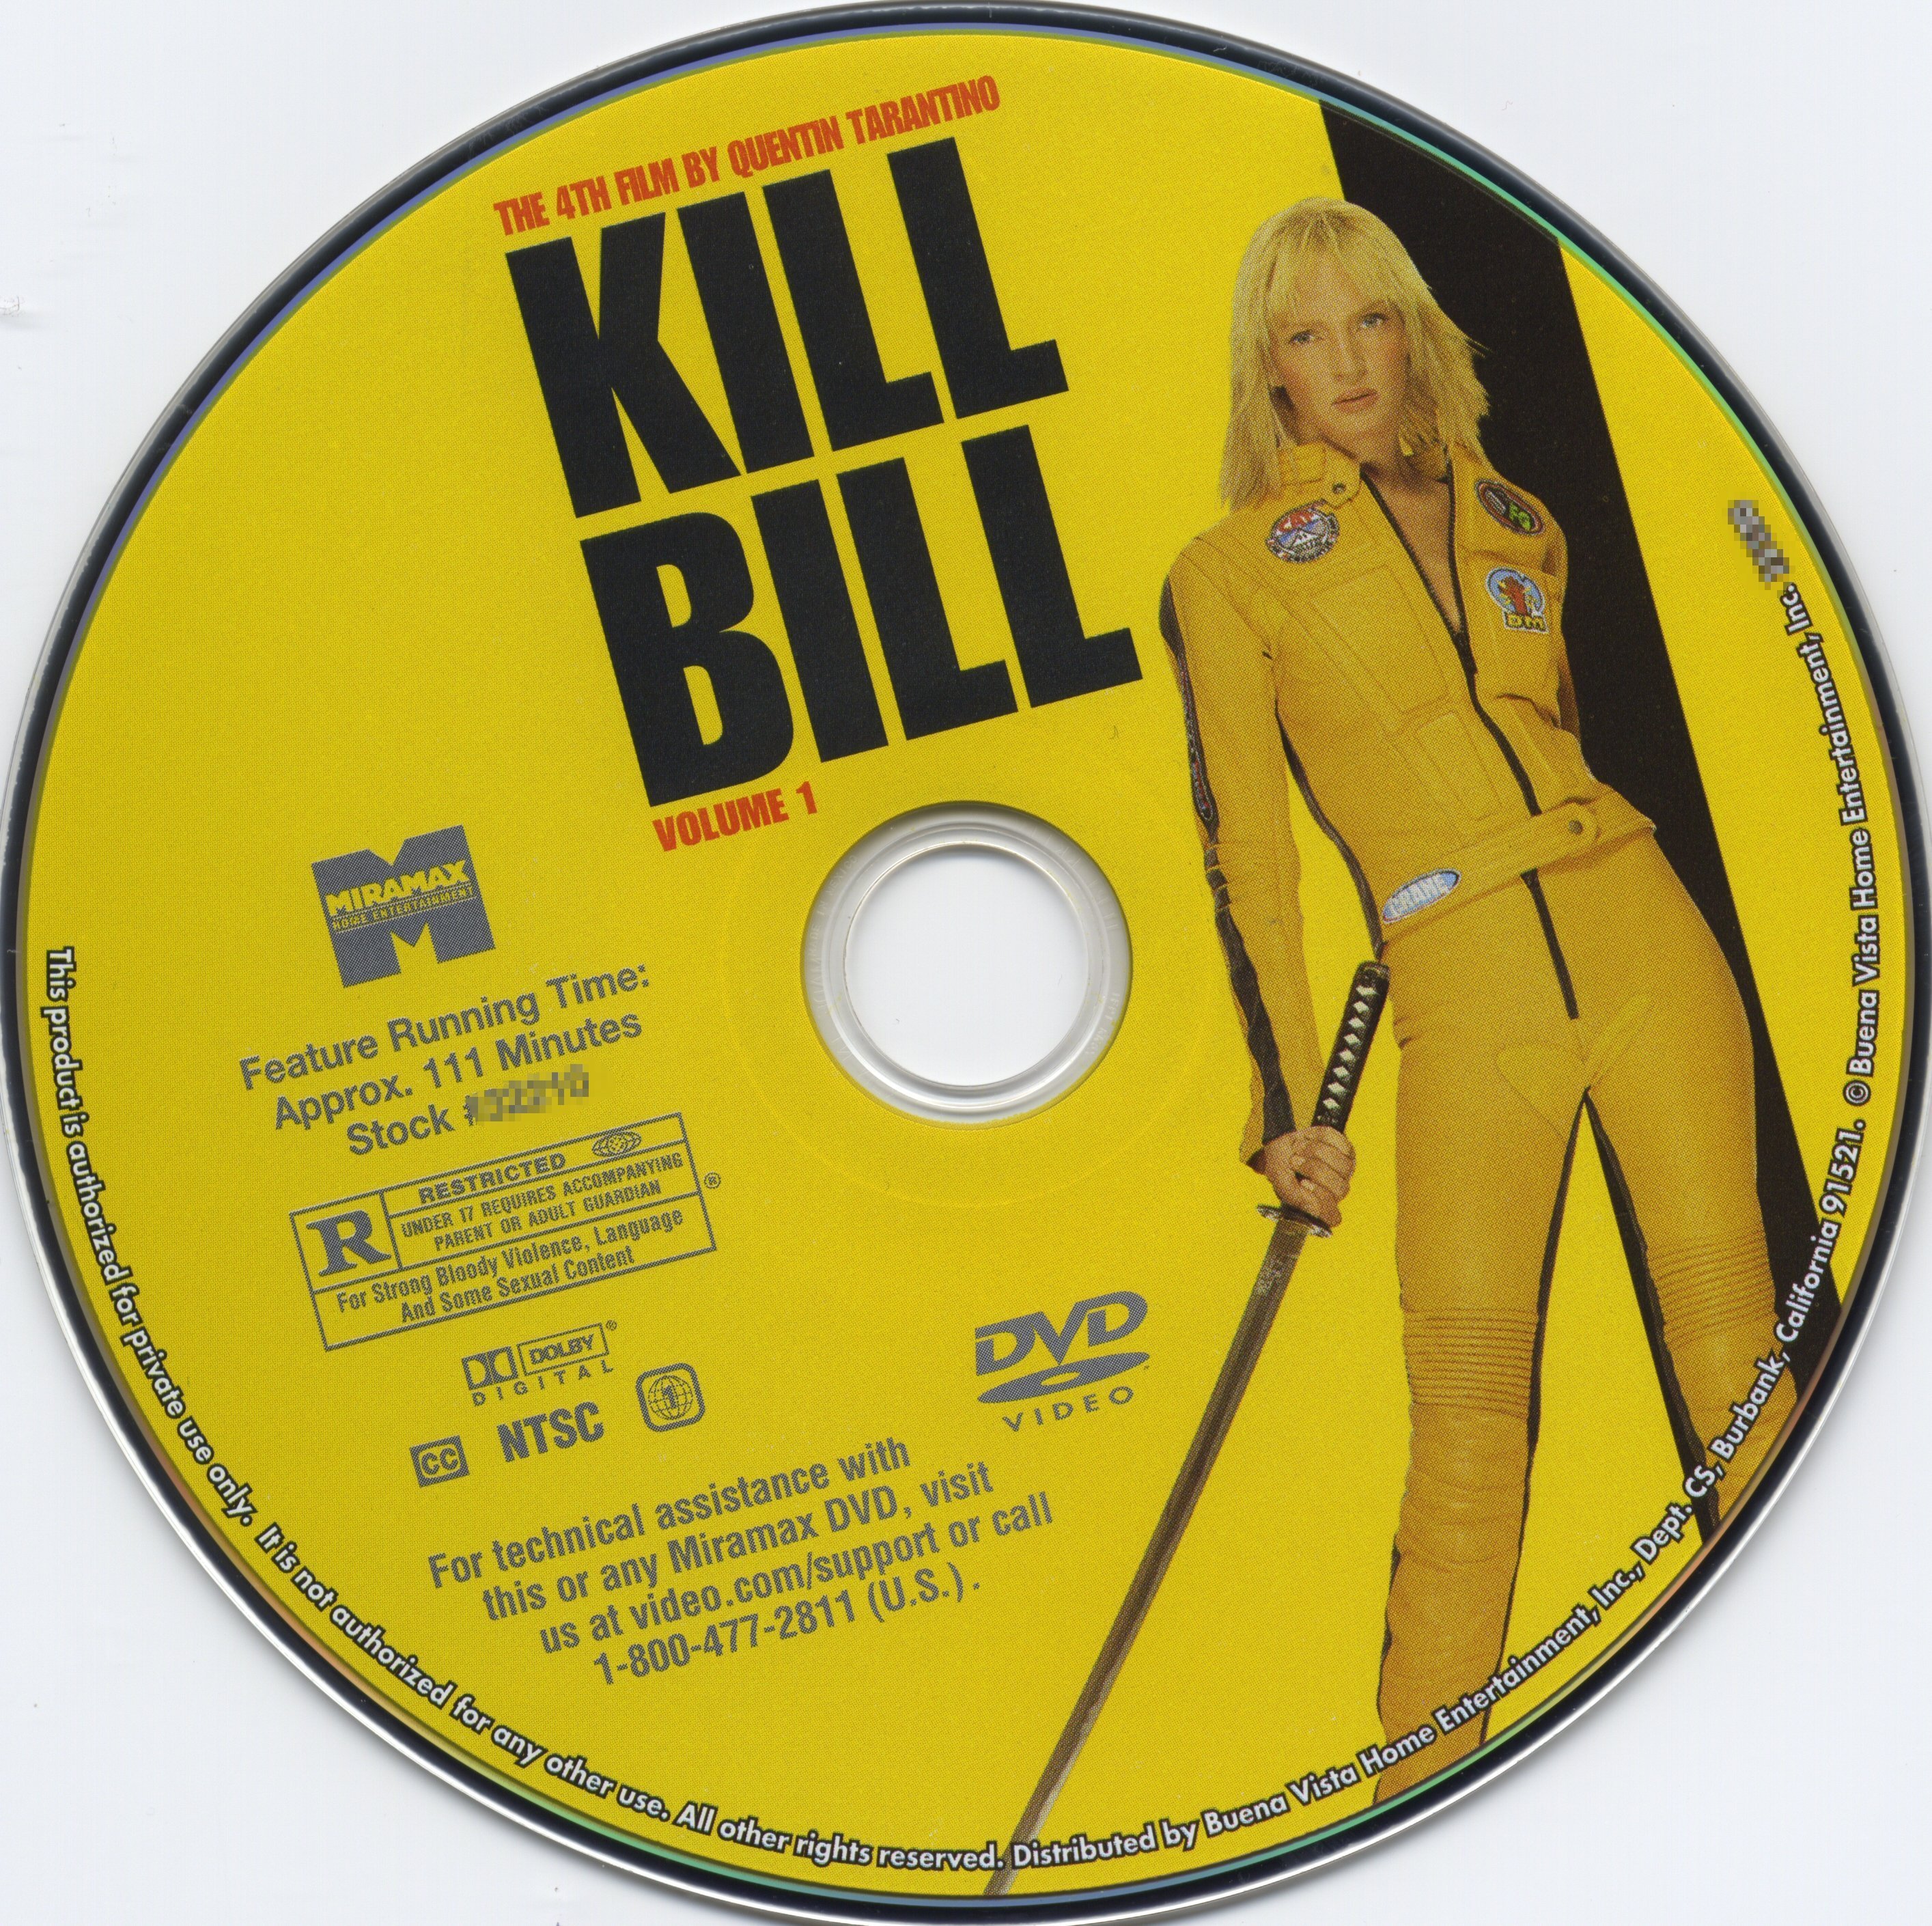 kill bill 1 1080p indir